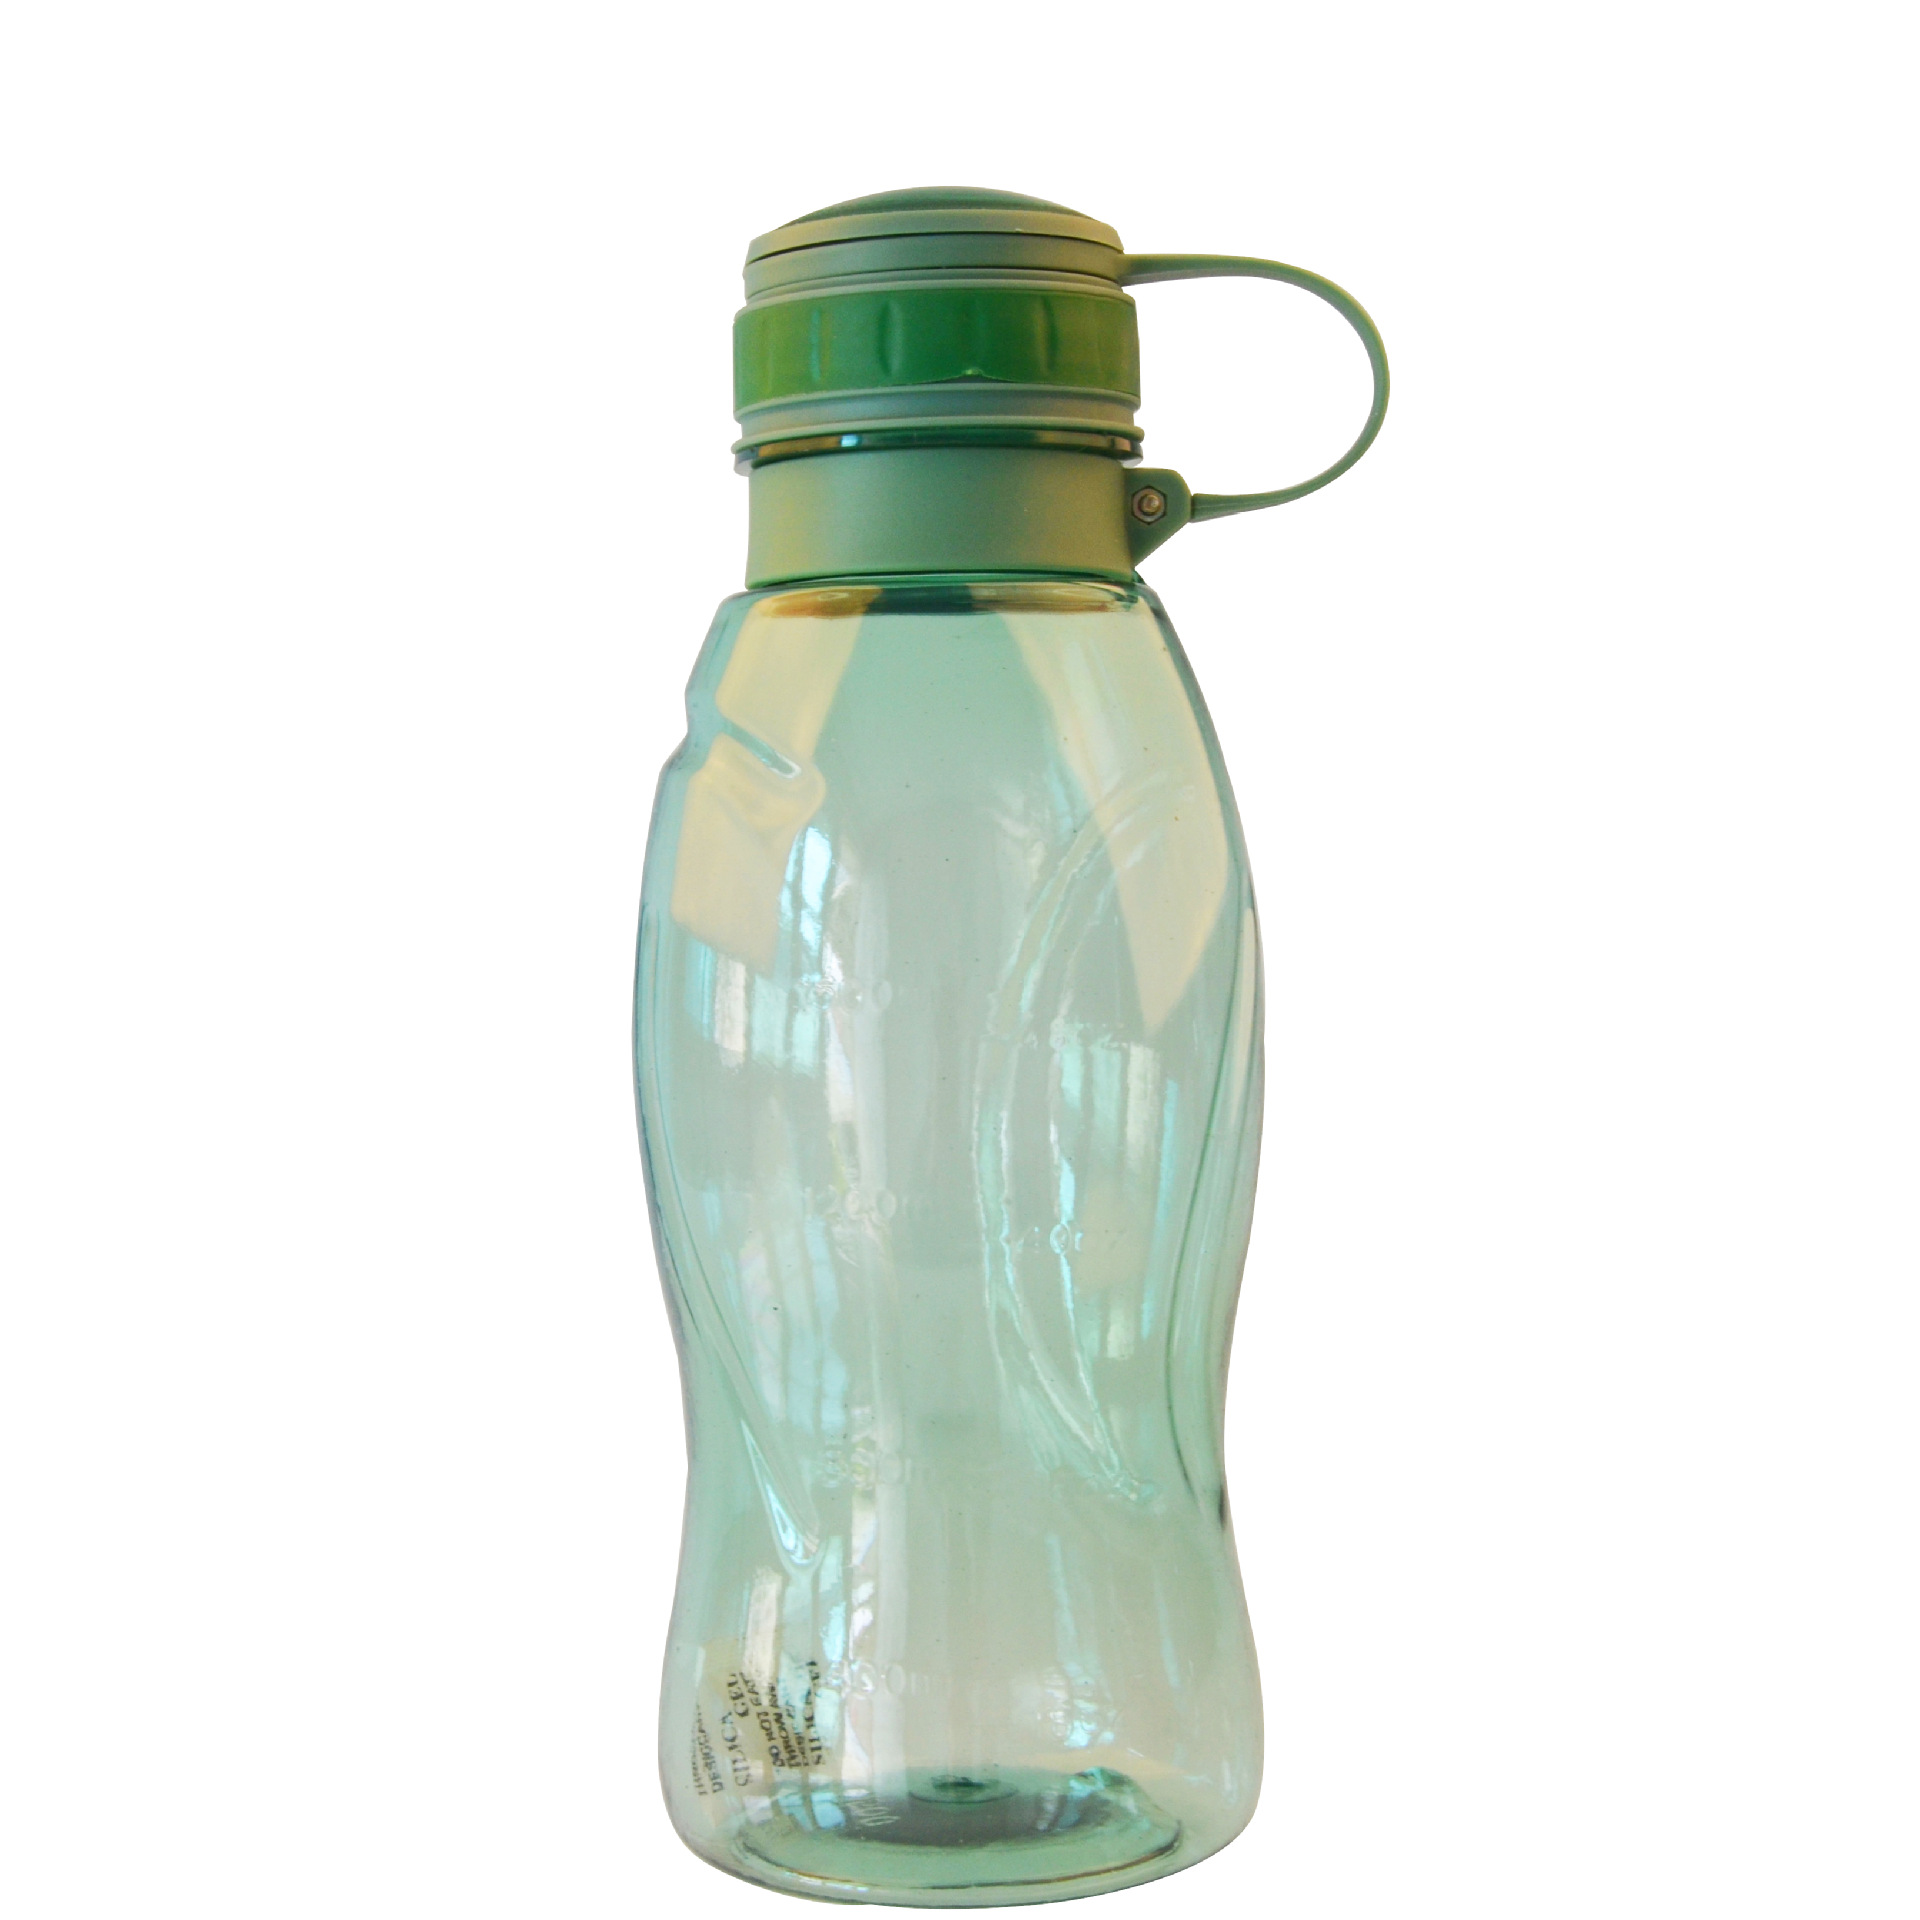 塑料瓶 pet食品级透明 饮料瓶 矿泉水瓶 500ml 加工价格 批发定制-阿里巴巴